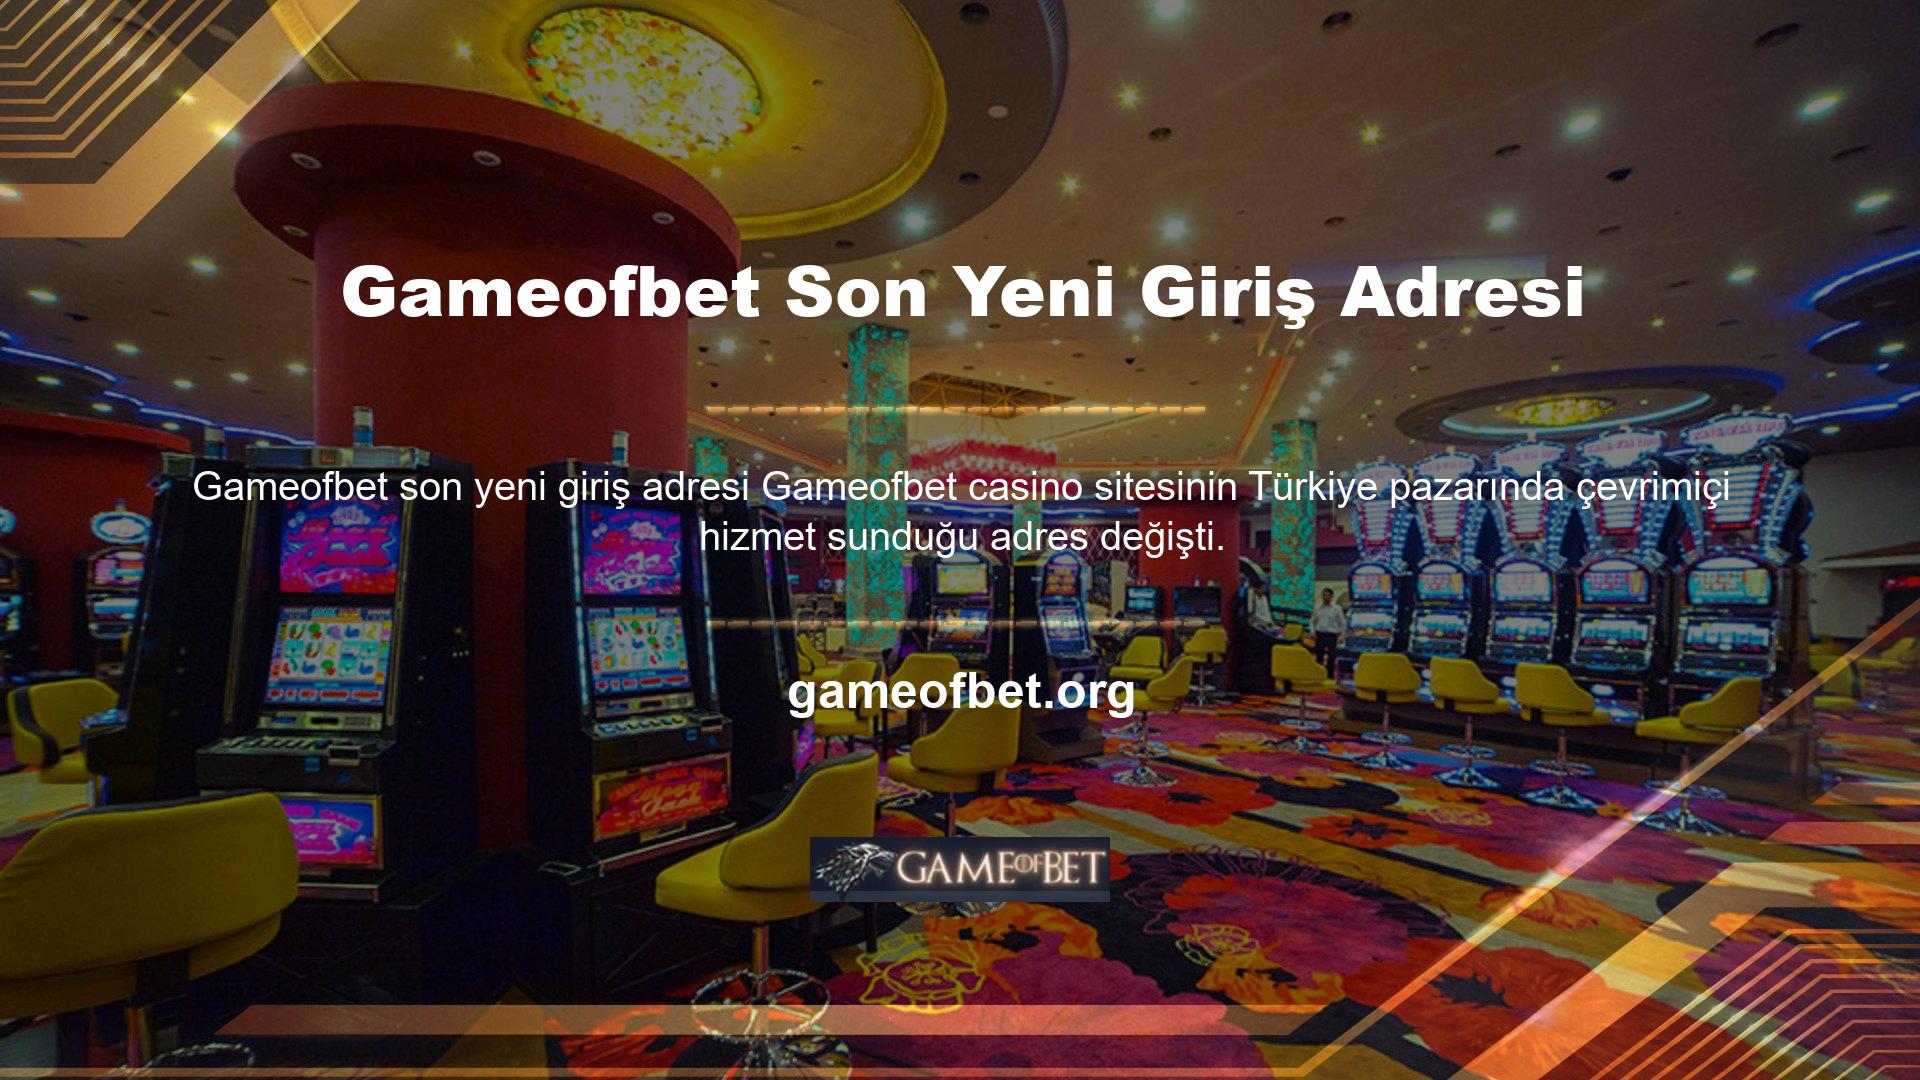 Yasal nedenlerden dolayı zorunlu olarak yapılan değişikliklerin ardından Gameofbet giriş sorunları çözülmüş olup, bahis ve oyun oynamak isteyenlere geniş bir hizmet yelpazesi yeniden sunulmaktadır